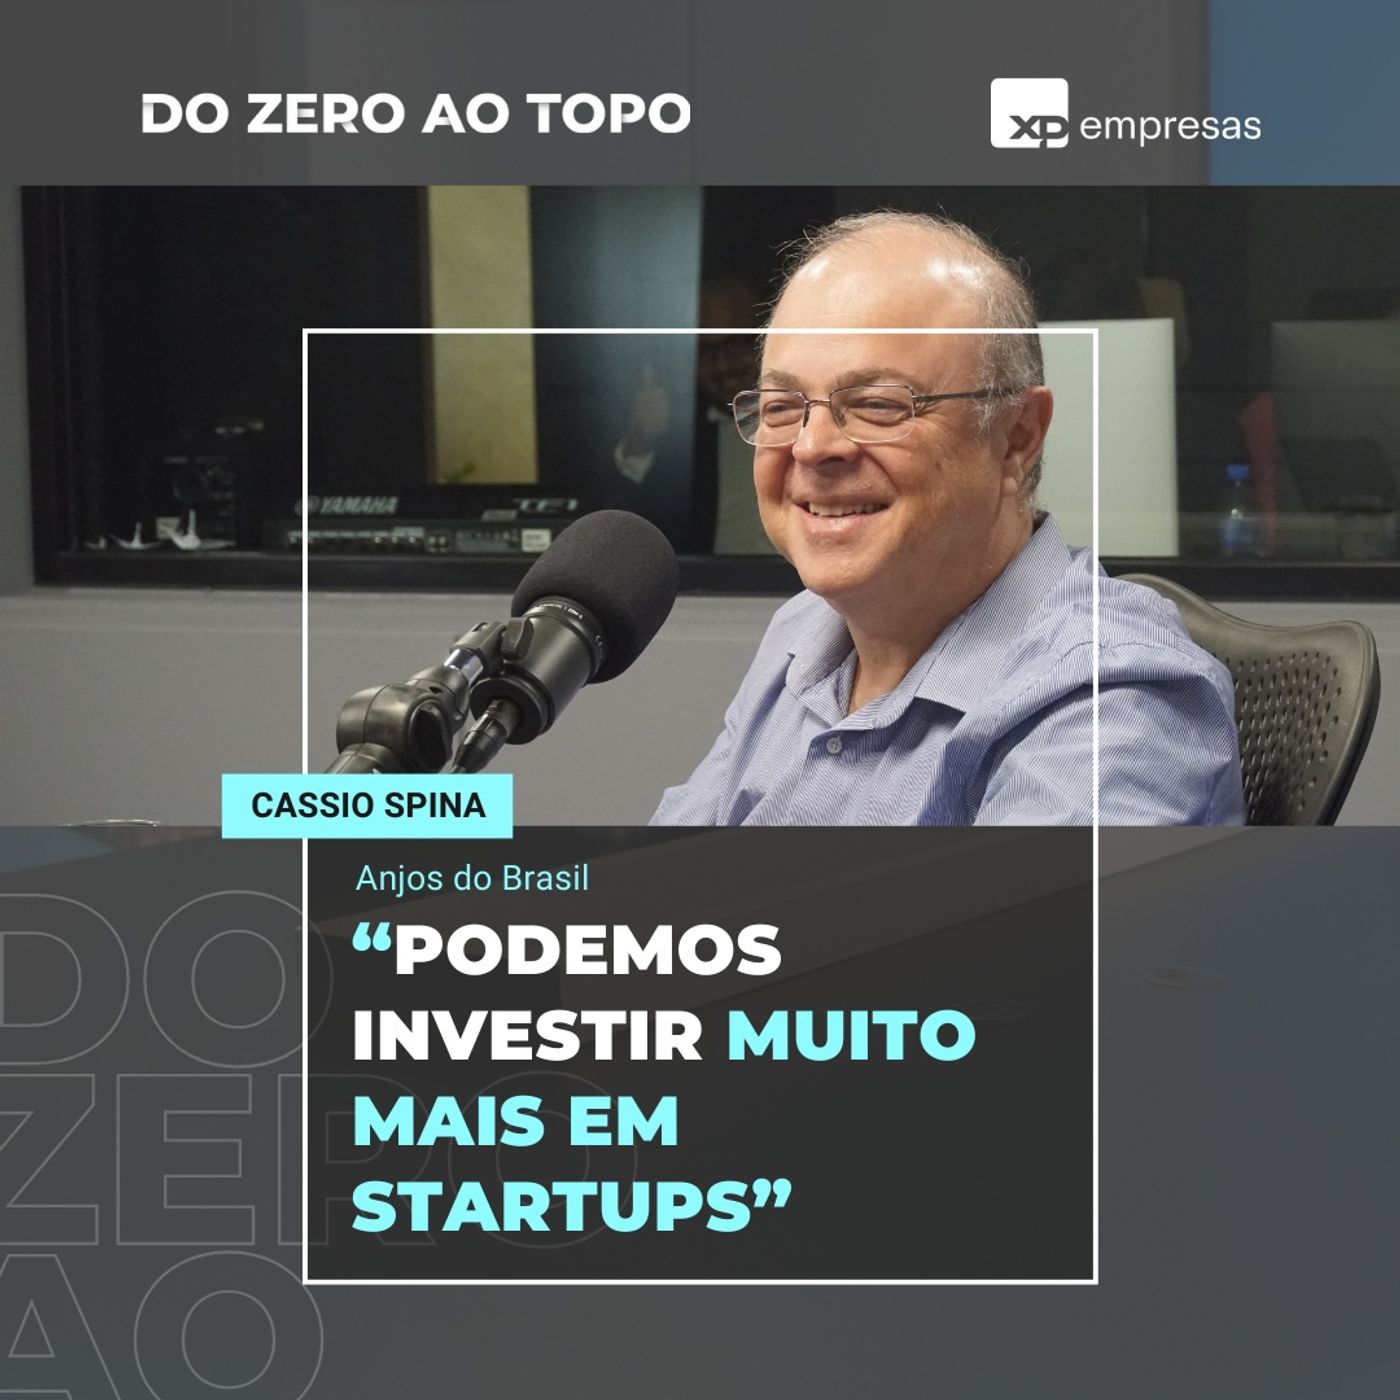 Cassio Spina, fundador da Anjos do Brasil, que tem 186 empresas investidas